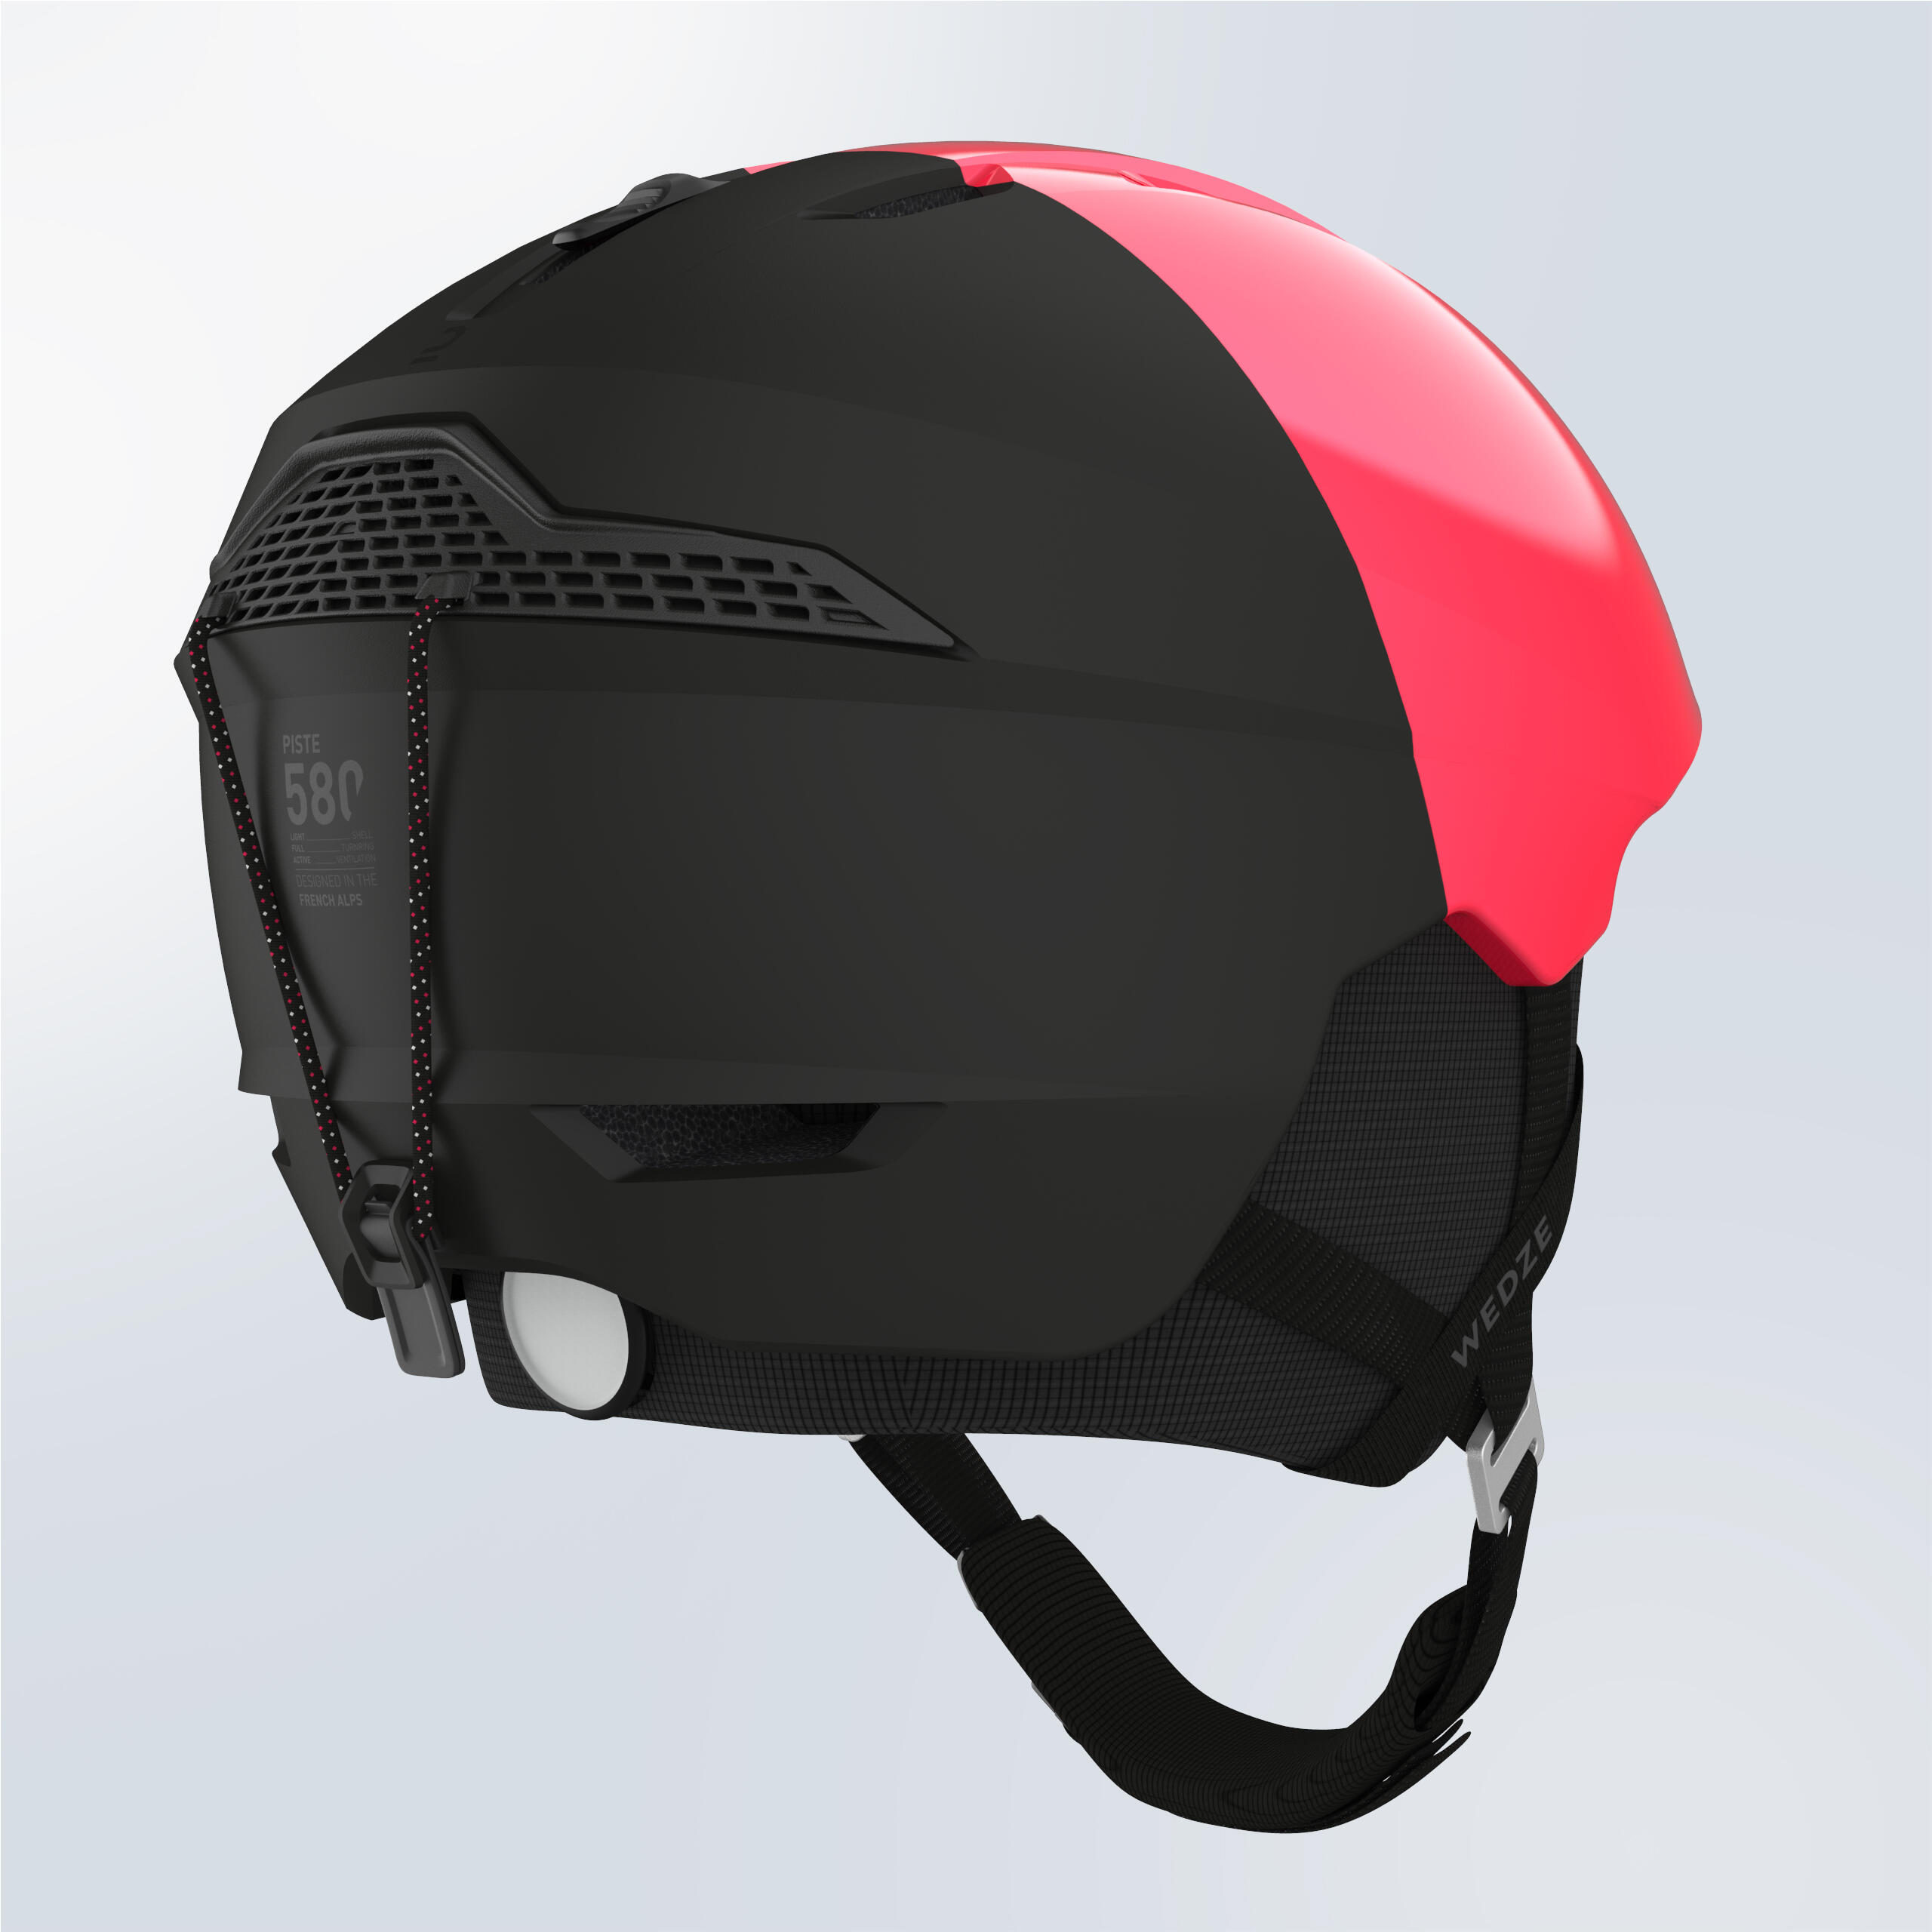 Adult PST 580 Ski Helmet - Pink and Black 6/9